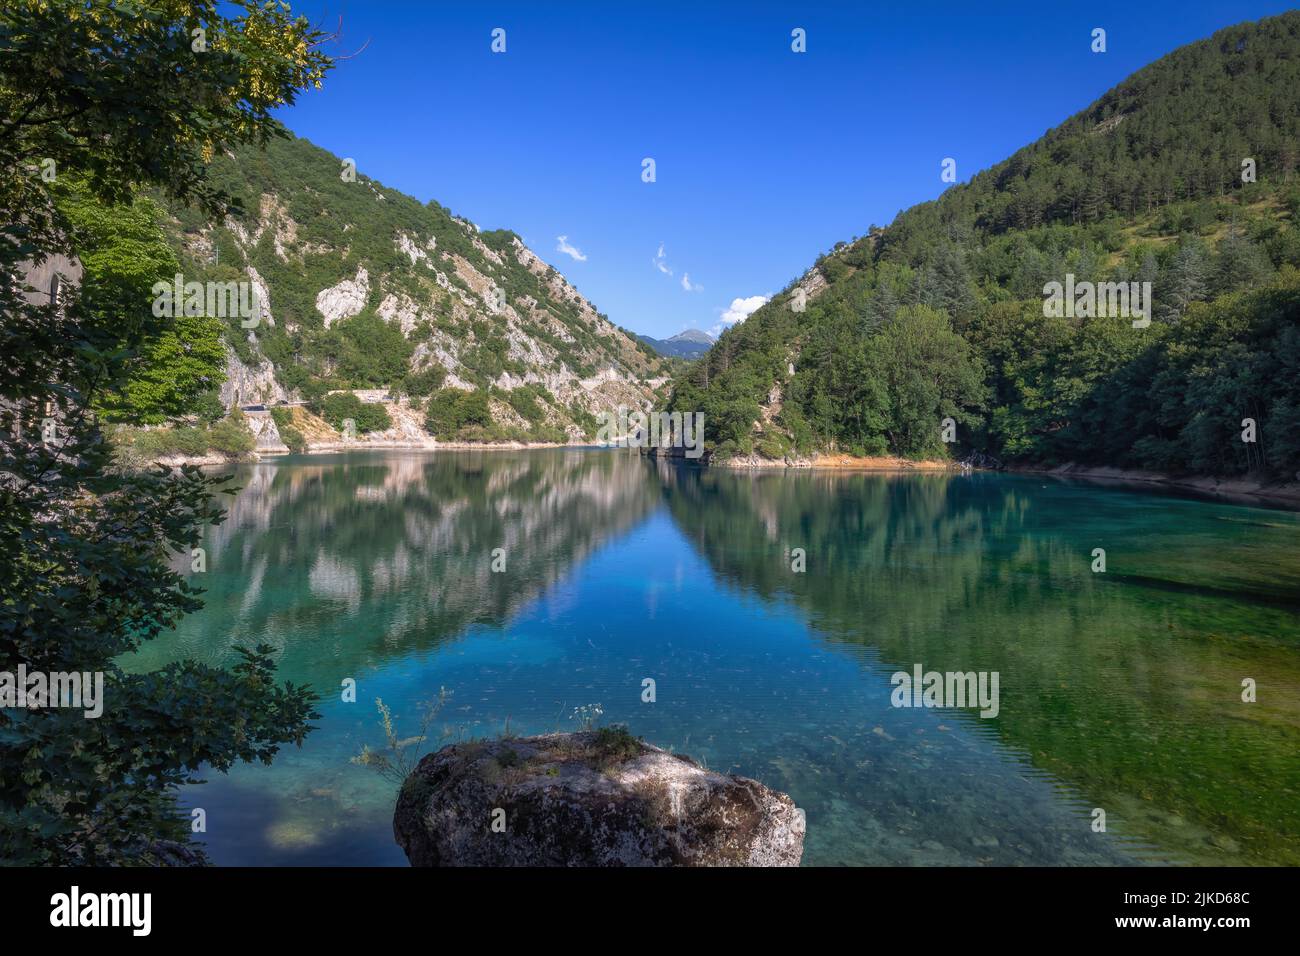 Piccolo lago circondato da montagne e speroni rocciosi, nel cuore verde di una natura quasi incontaminata. Lago di San Domenico, Abruzzo - Italia Foto Stock